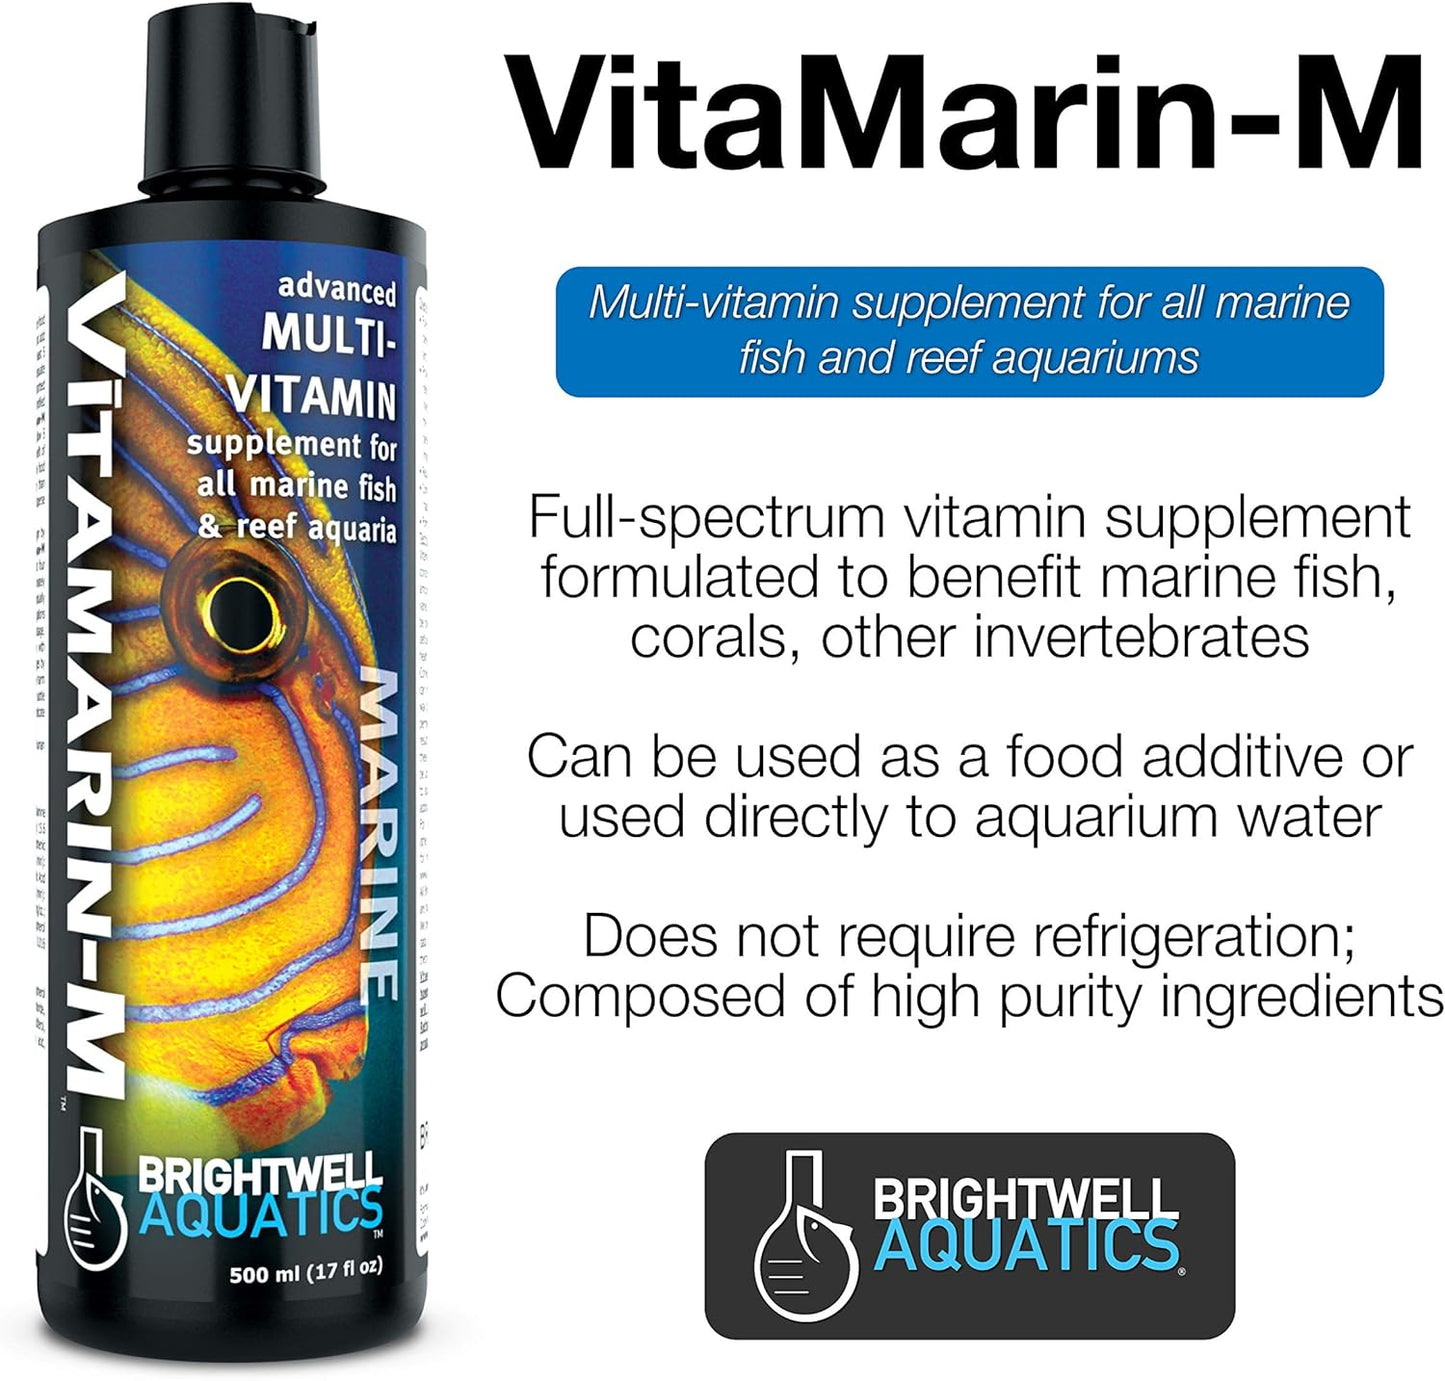 Vitamarin M - Liquid Multivitamin Supplement for Marine Fish Aquariums,500-Ml